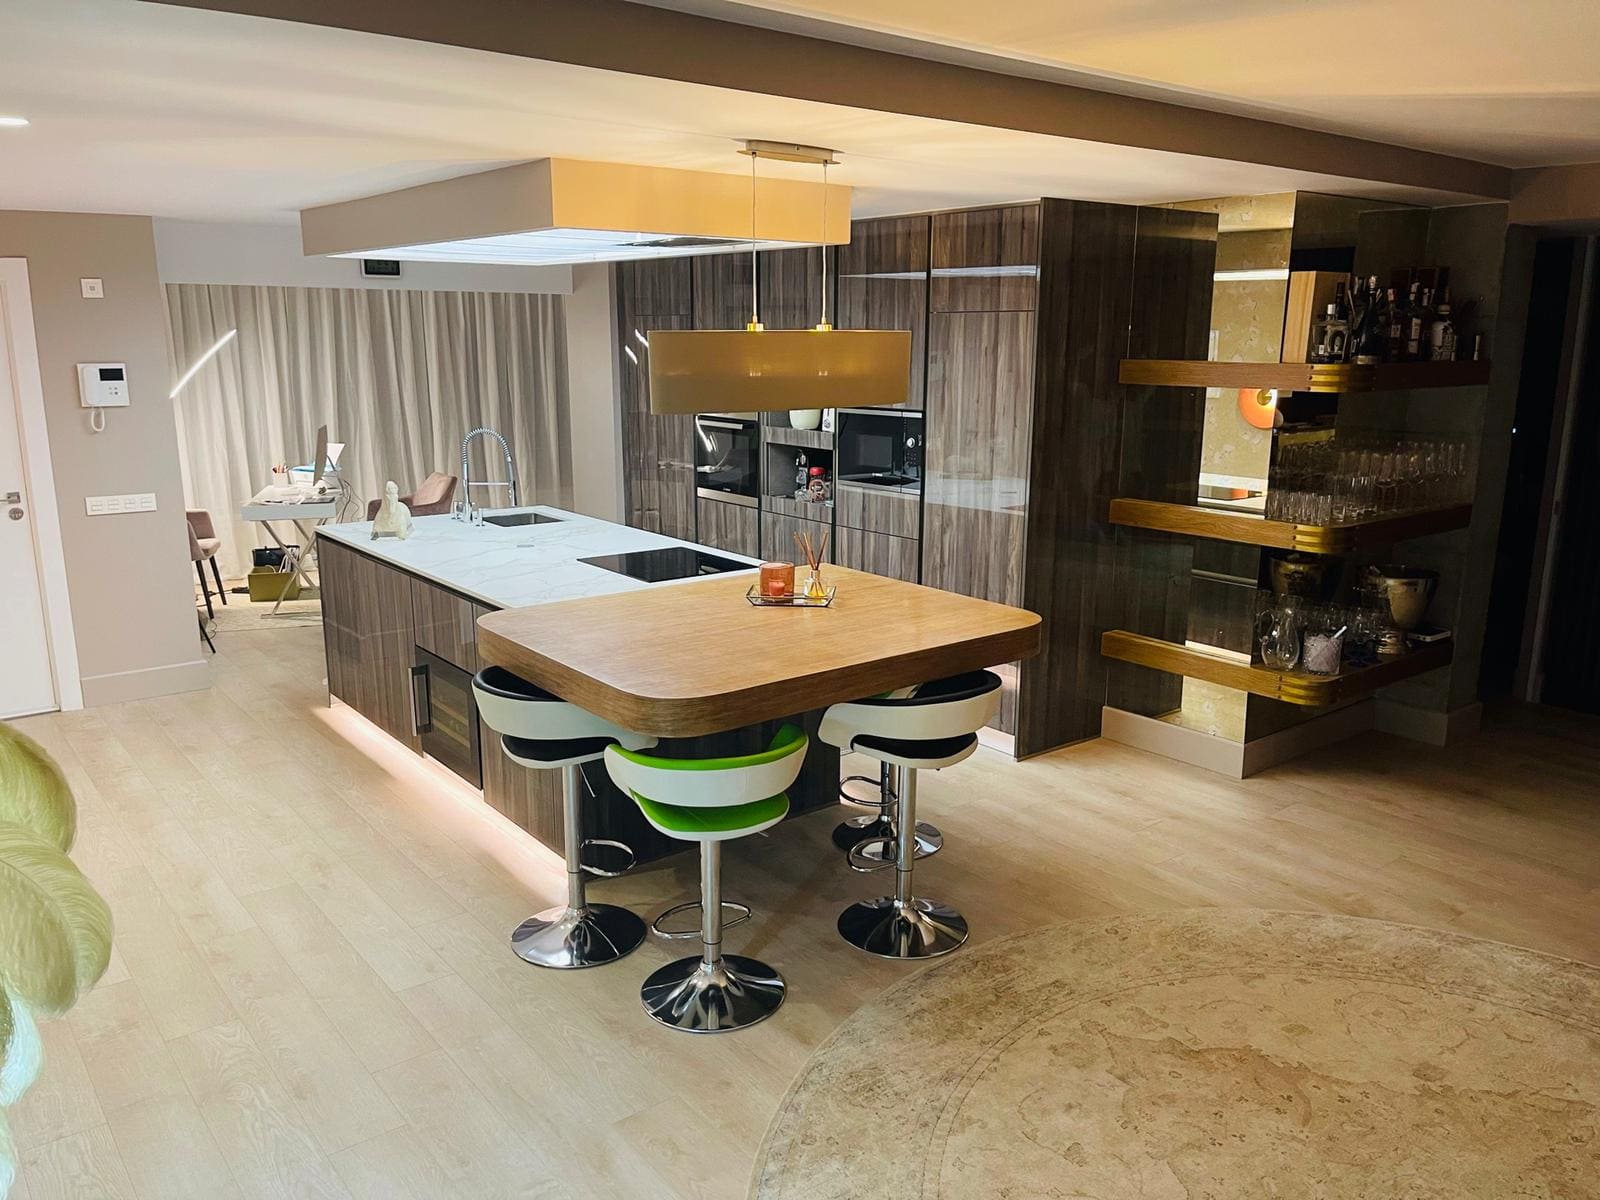 Convierte tu casa en un espacio renovado y funcional. Cocina